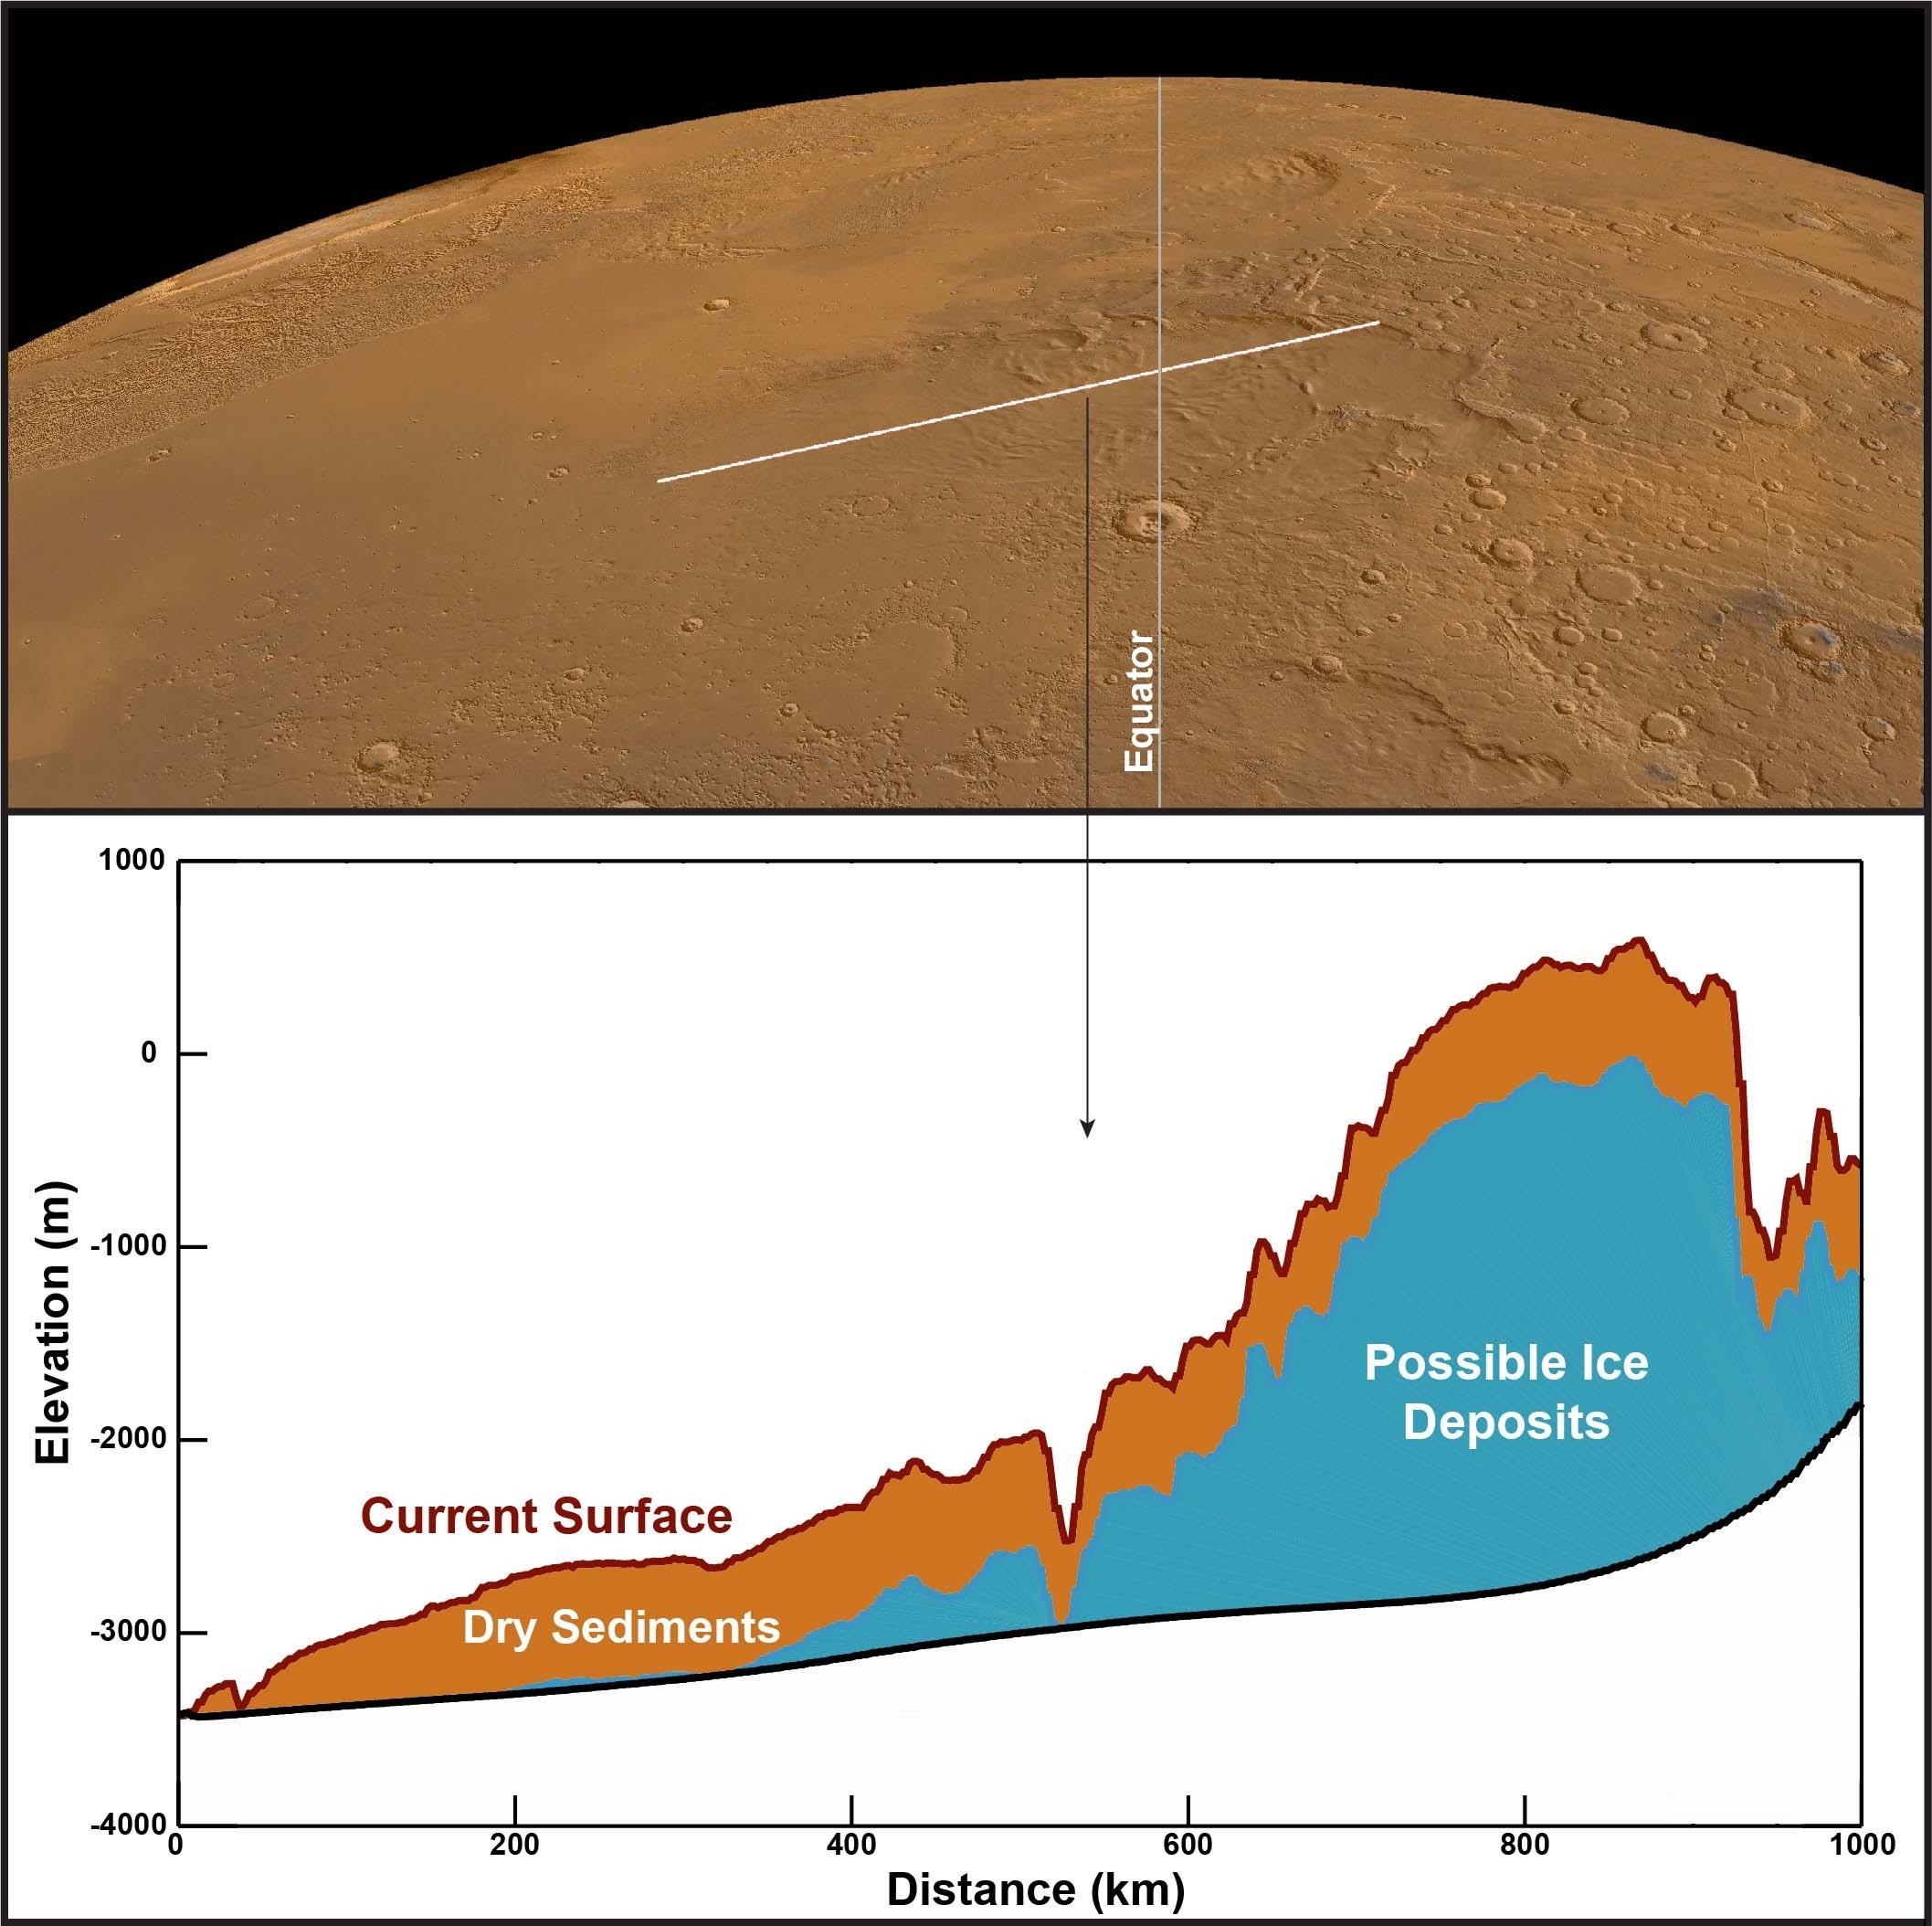 Lorsque Mars Express a tourné son sondeur radar MARSIS vers la MFF, il a révélé une surprise: les signaux radar renvoyés par ce qui se trouve sous la surface correspondent à ce que l'on s'attend à voir dans des dépôts stratifiés riches en glace d'eau. La ligne blanche (en haut) montre une bande de terre scannée par MARSIS. Le graphique (en bas) montre la forme du terrain et la structure du sous-sol, avec la couche de sédiments secs – probablement de la poussière ou des cendres volcaniques – en orange et la couche de dépôts riches en glace présumés en bleu. Le dépôt de glace s'étend sur des milliers de mètres de haut et des centaines de kilomètres de large. [Smithsonian Institution - CReSIS/KU]